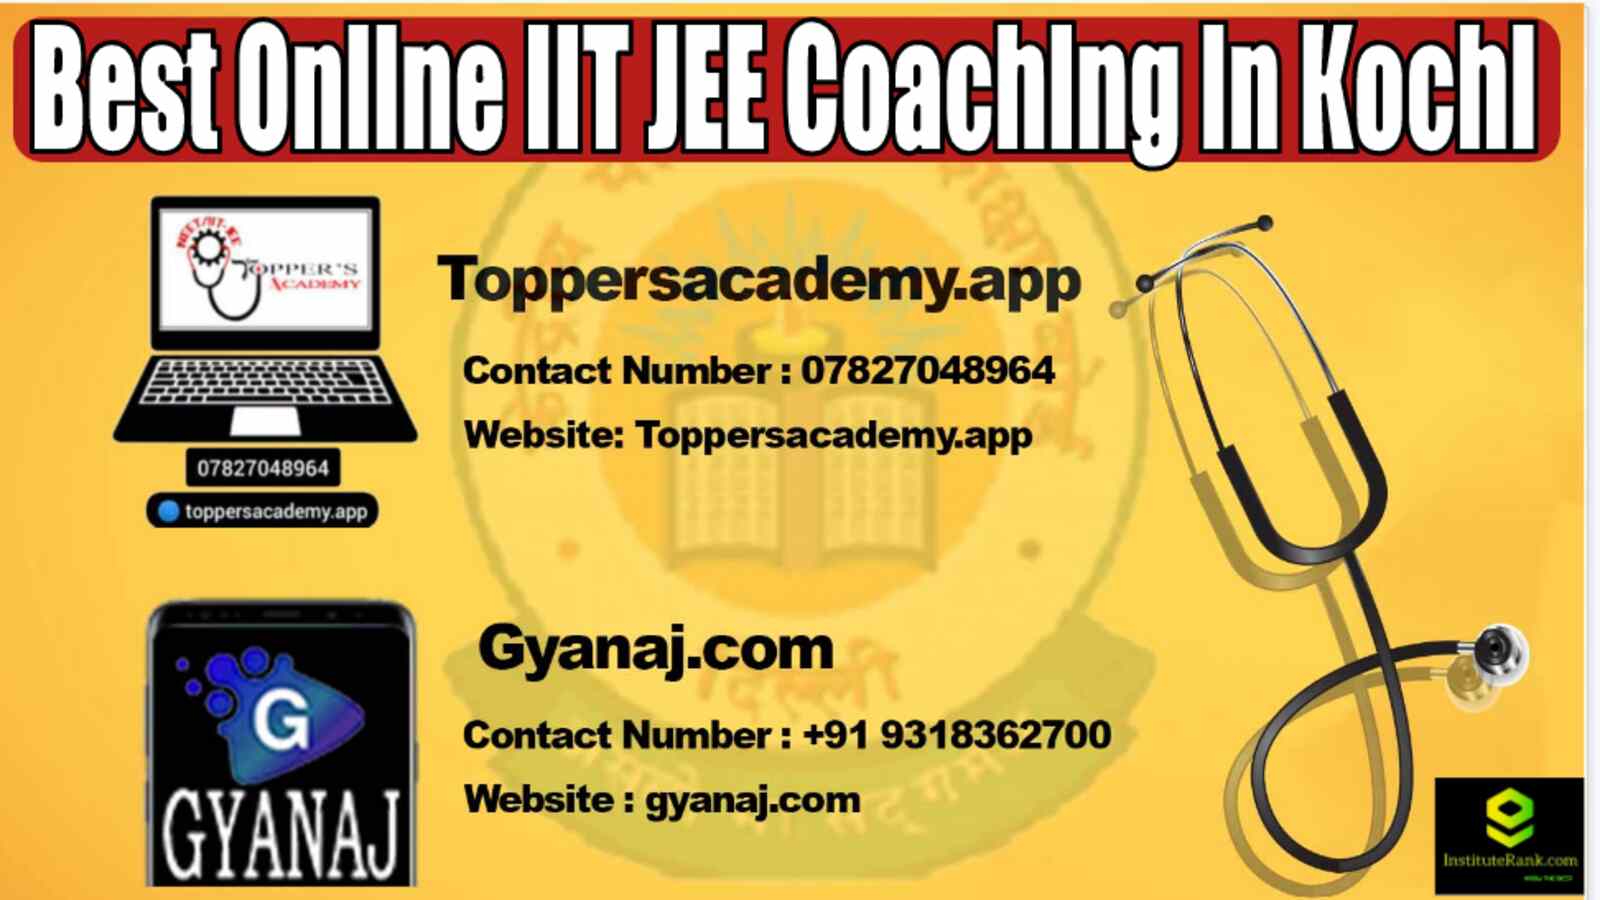 Best Online IIT JEE Coaching in Kochi 2022